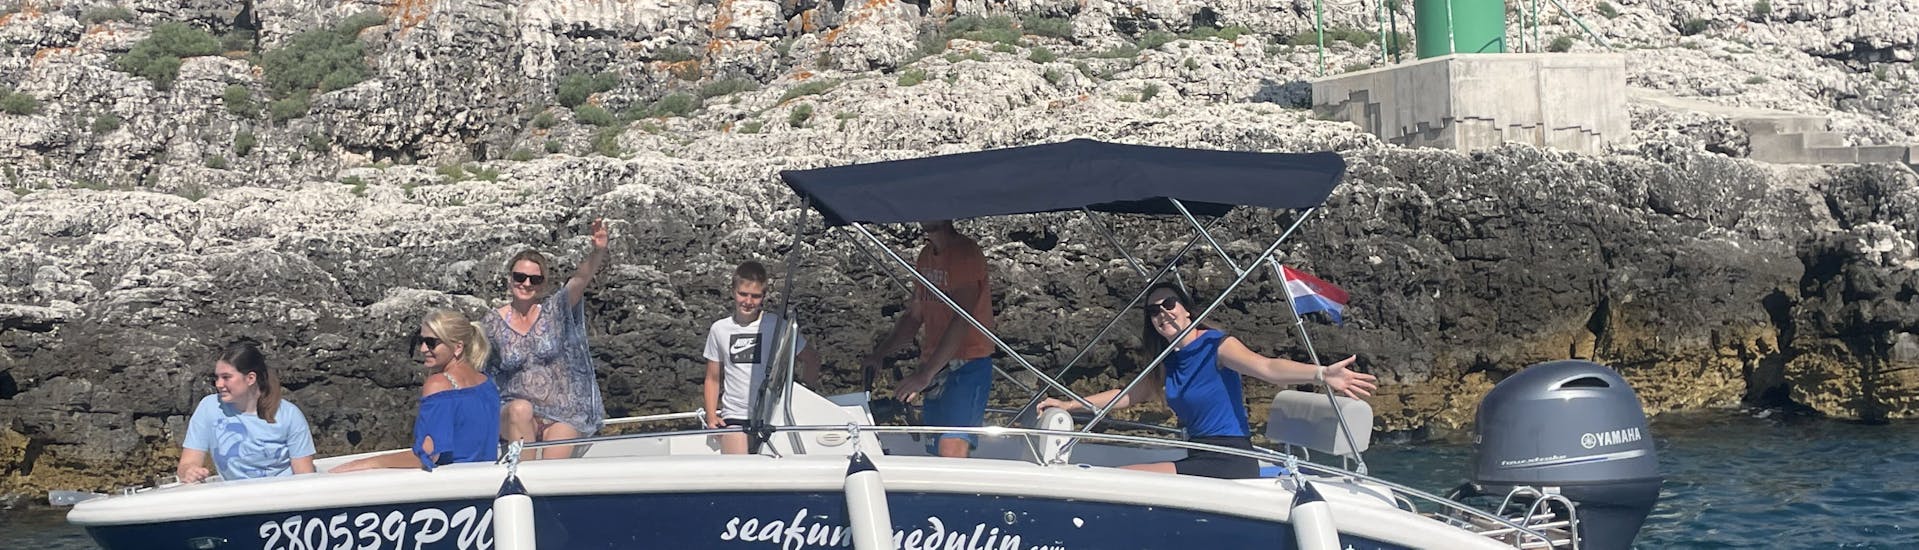 Foto de un grupo disfrutando de su Alquiler de Barco en Banjole (hasta 8 personas) con Seafun Medulin.